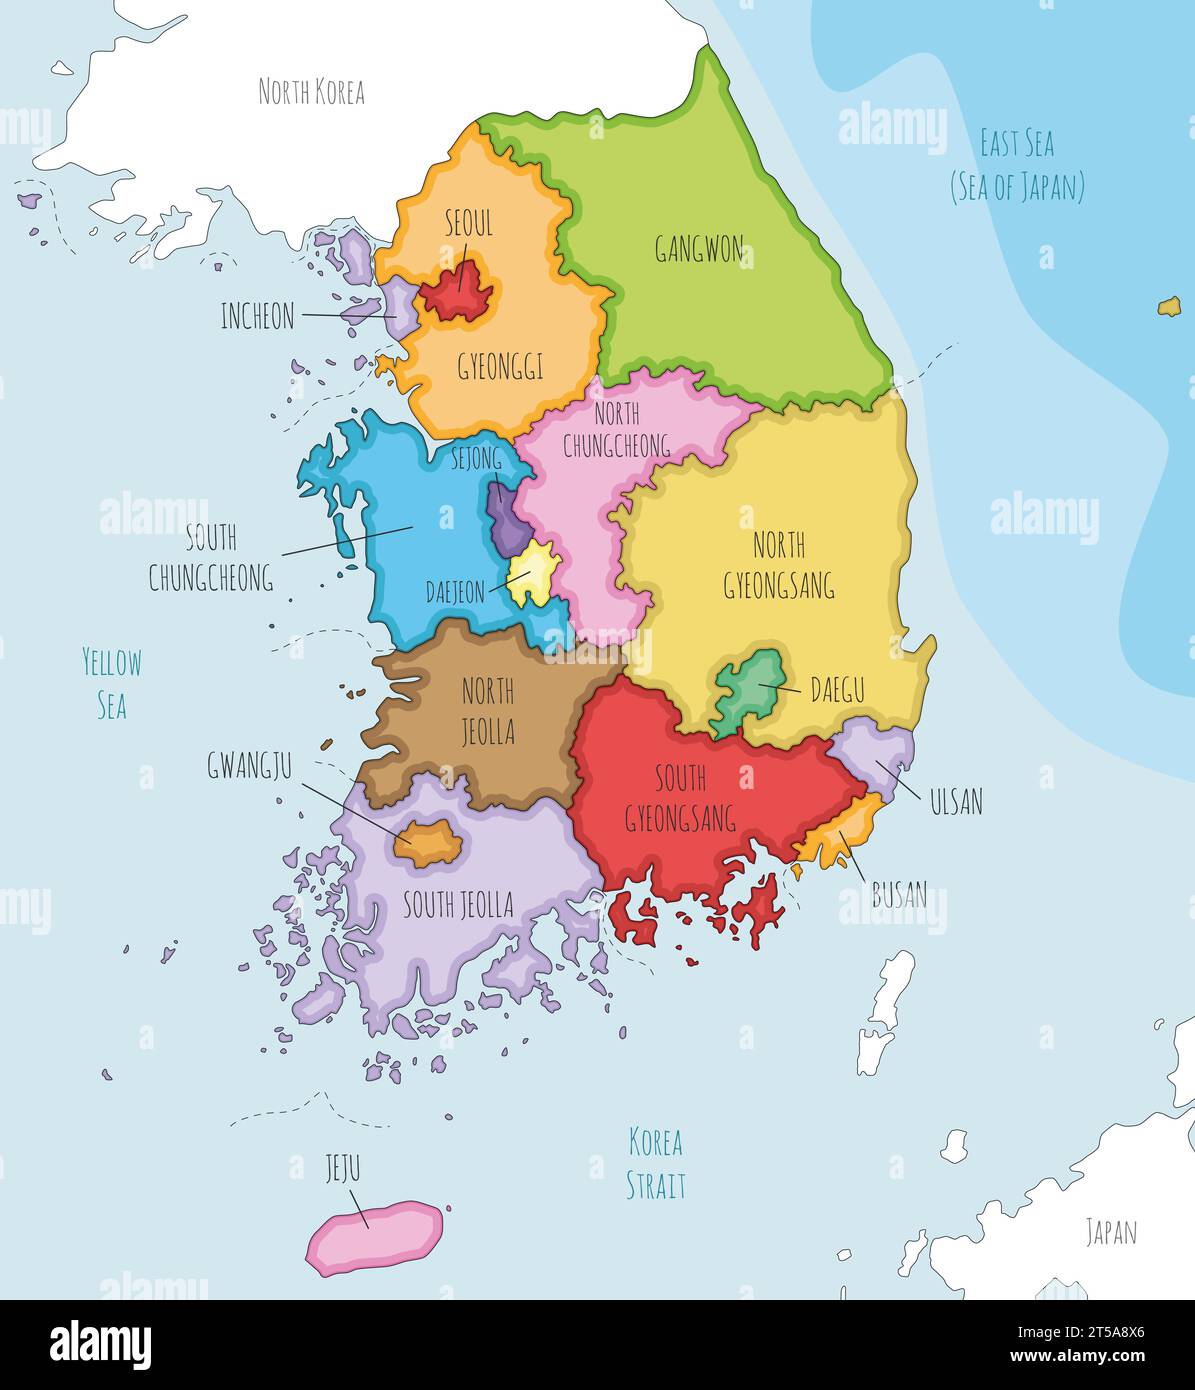 Mappa vettoriale illustrata della Corea del Sud con province, città metropolitane e divisioni amministrative e paesi vicini. Modificabile e chiaro Illustrazione Vettoriale